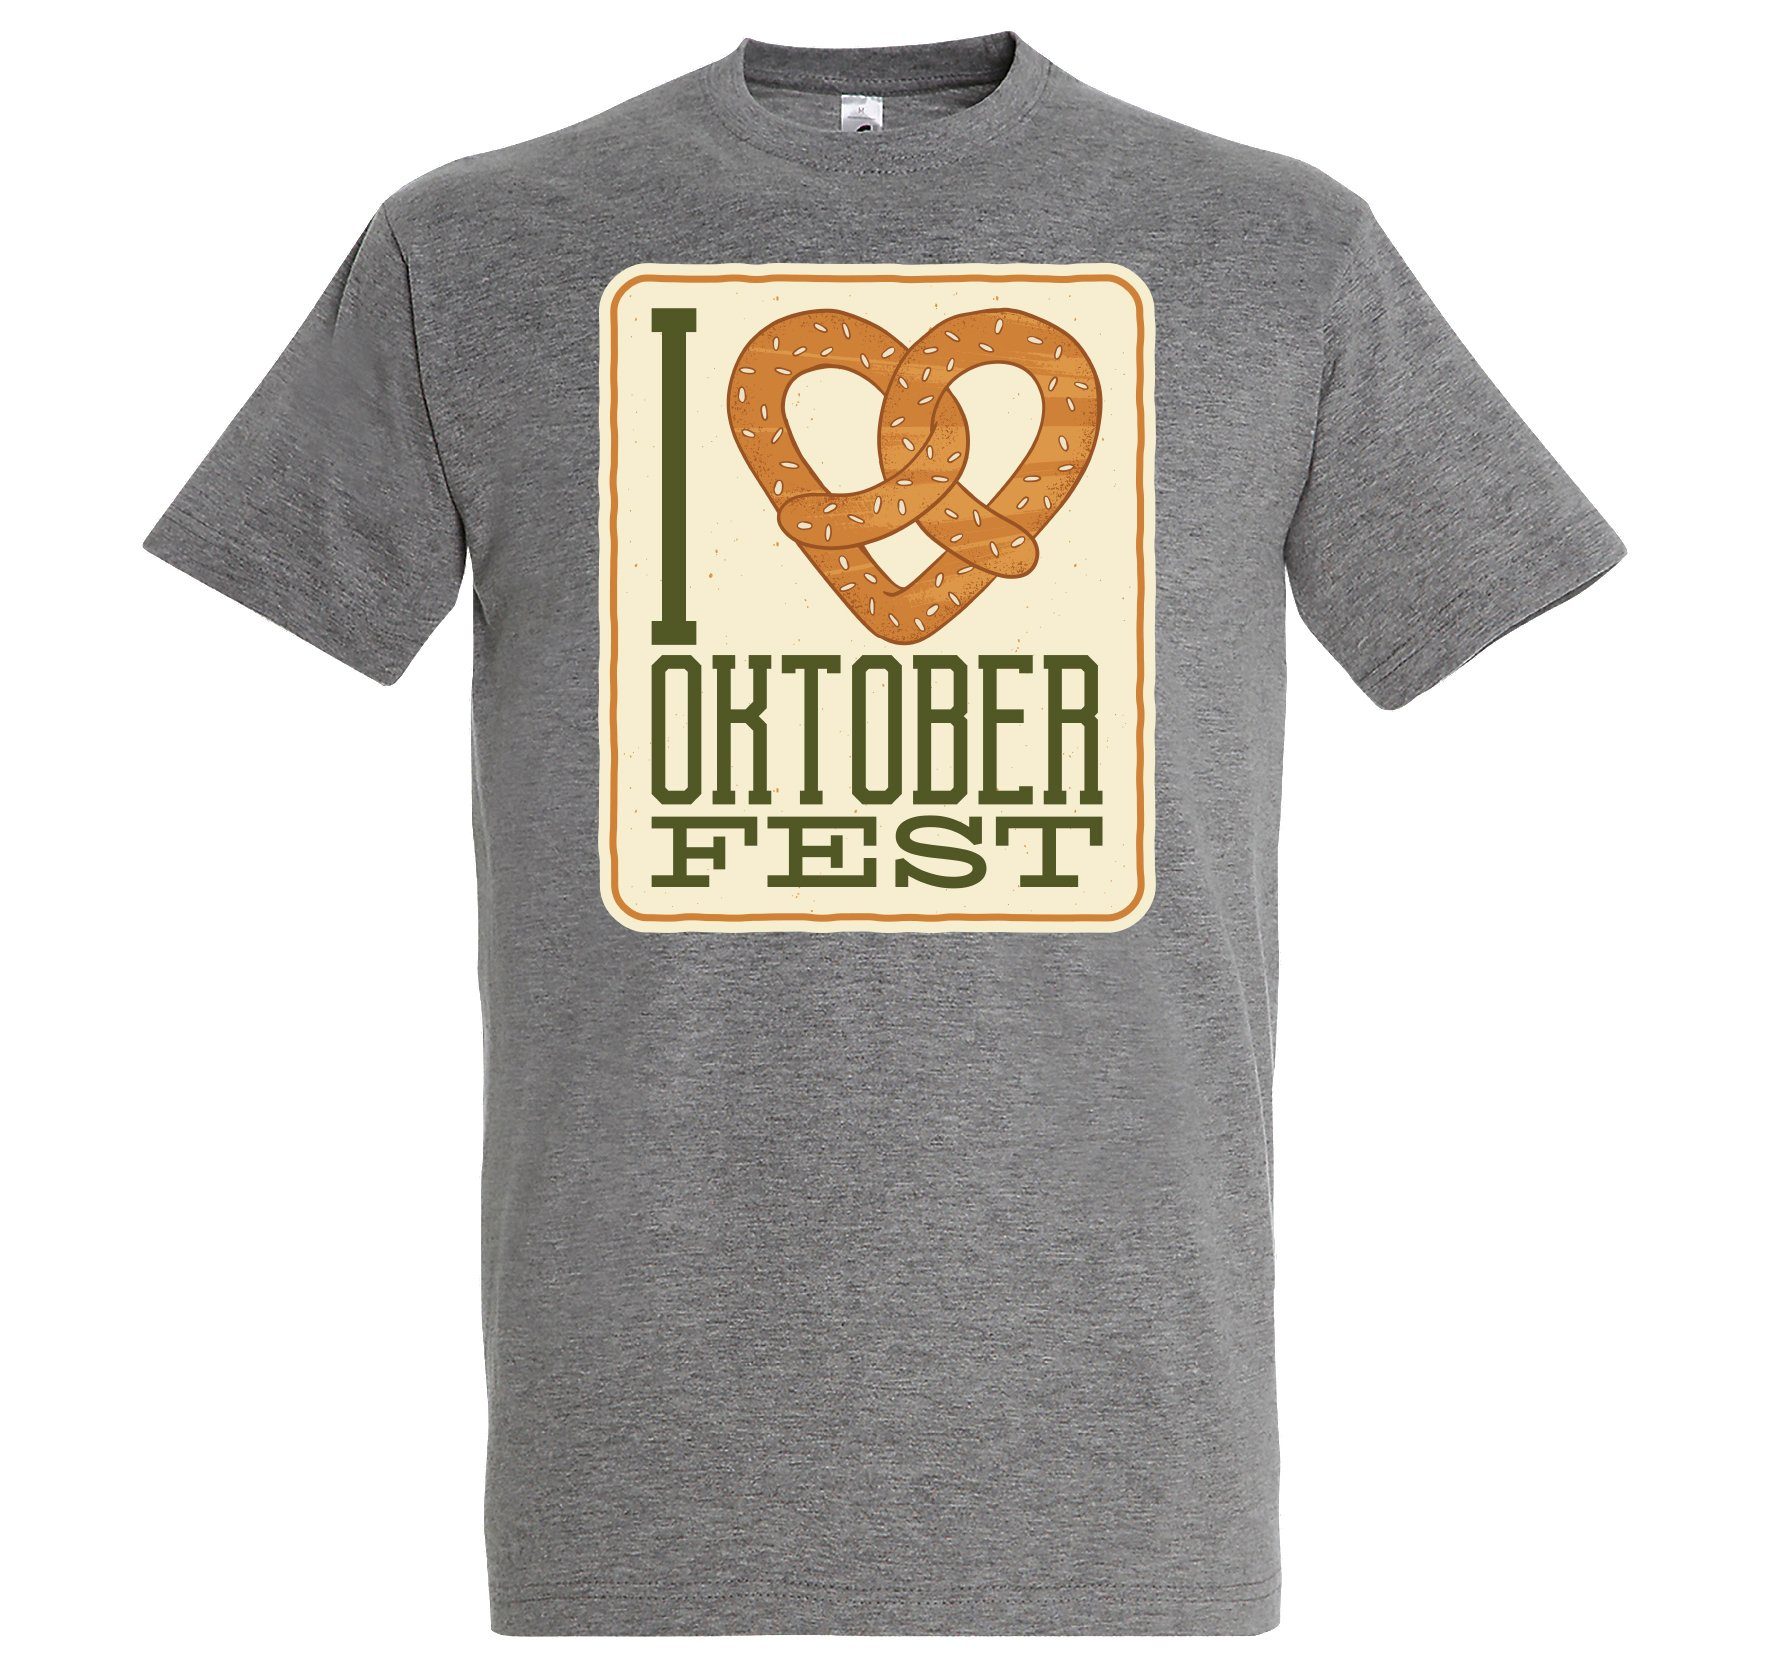 Print-Shirt Aufdruck Spruch und Herren LOVE OKTOBERFEST mit Youth Designz T-Shirt I Grau Brezel Fun-Look